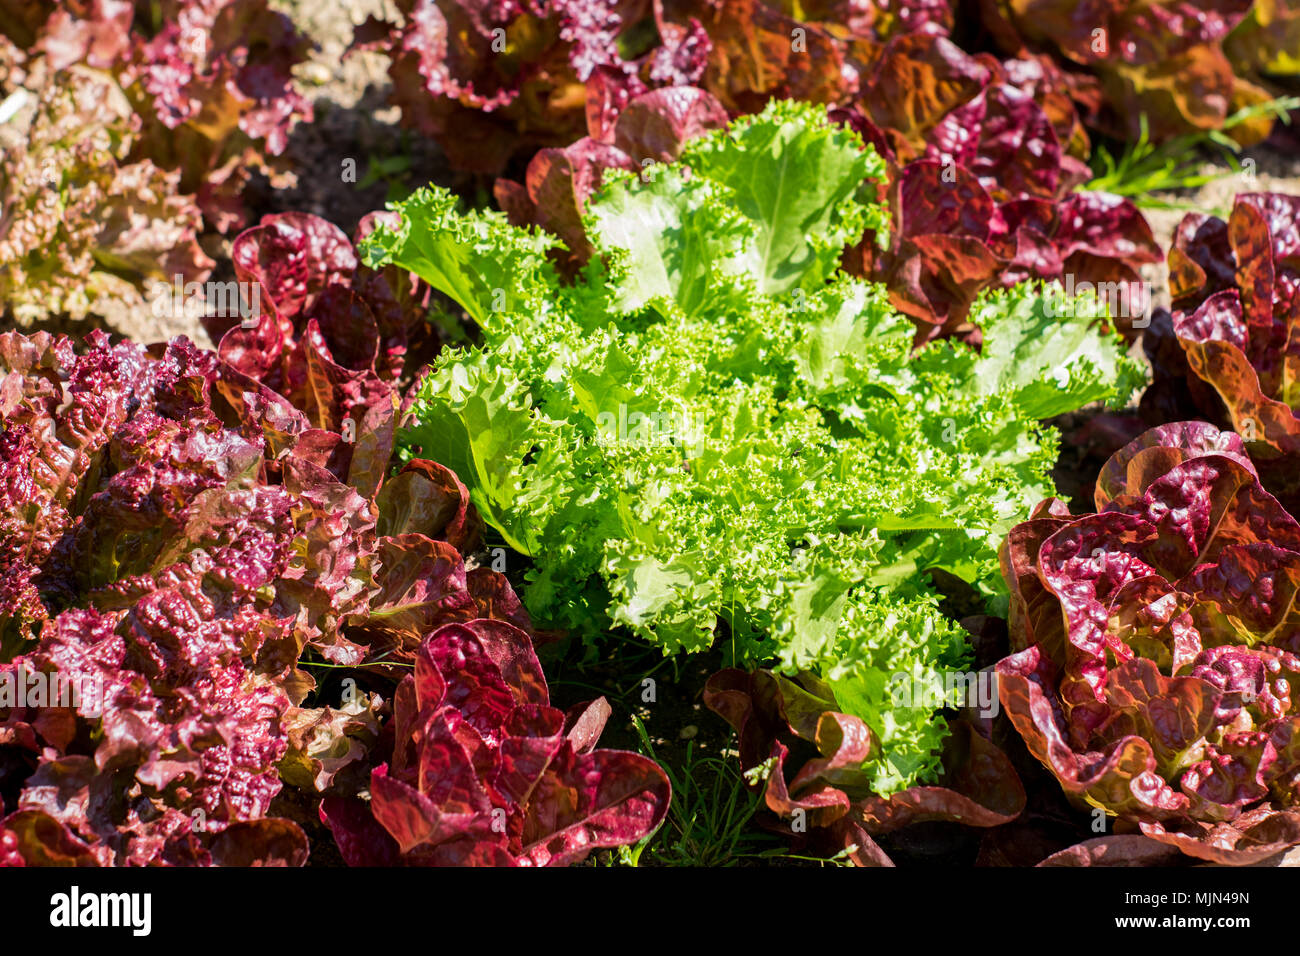 Salat Anbau in der Farm, heller und dunkler Salat gemischt, portugiesische Landwirtschaft os Gemüse Stockfoto